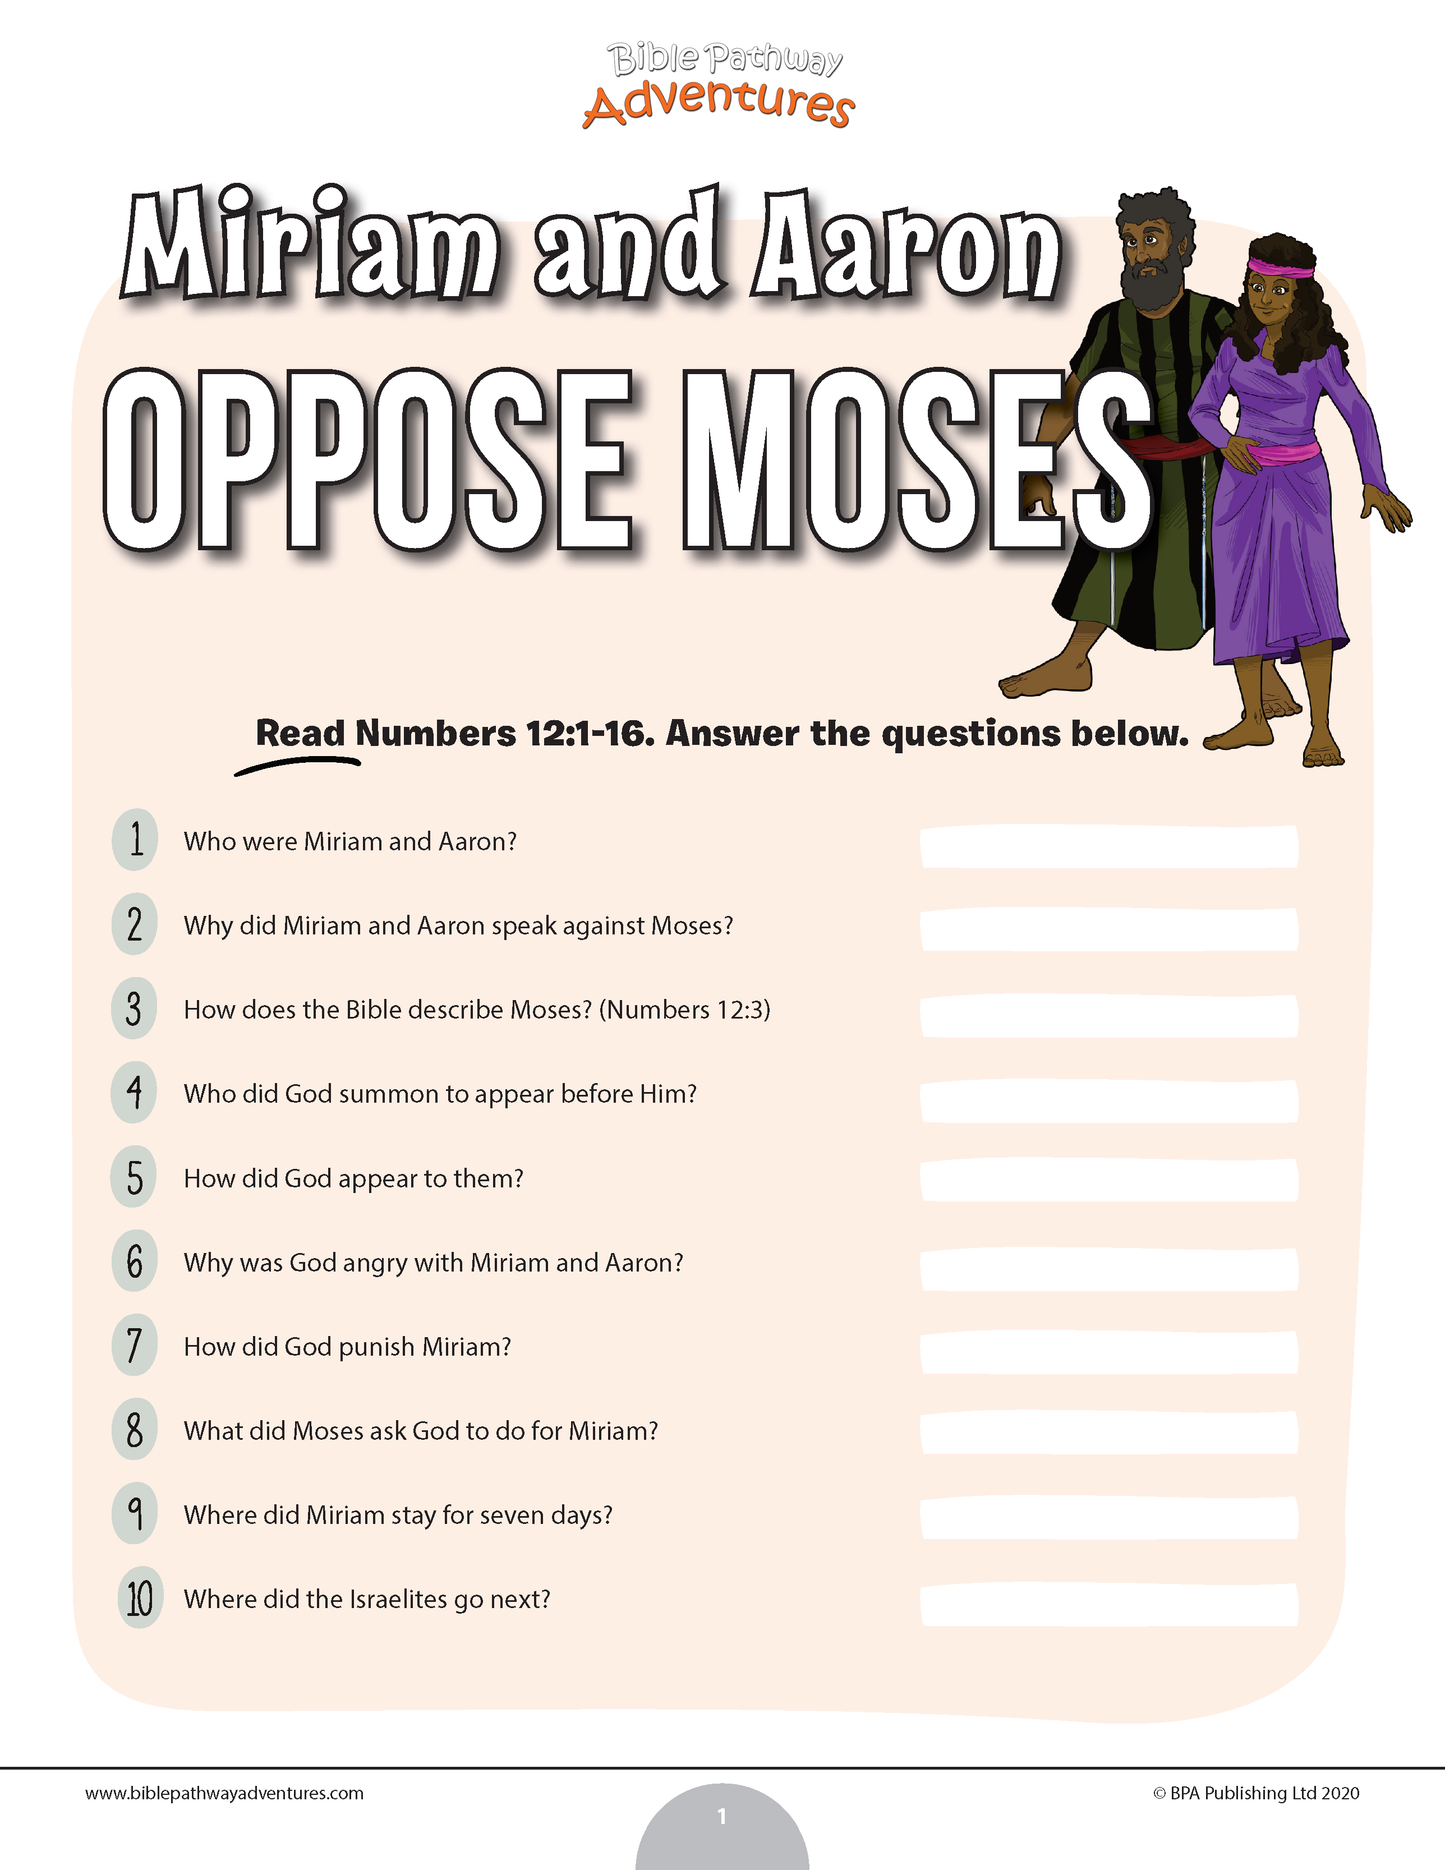 Prueba de Miriam y Aarón se oponen a Moisés